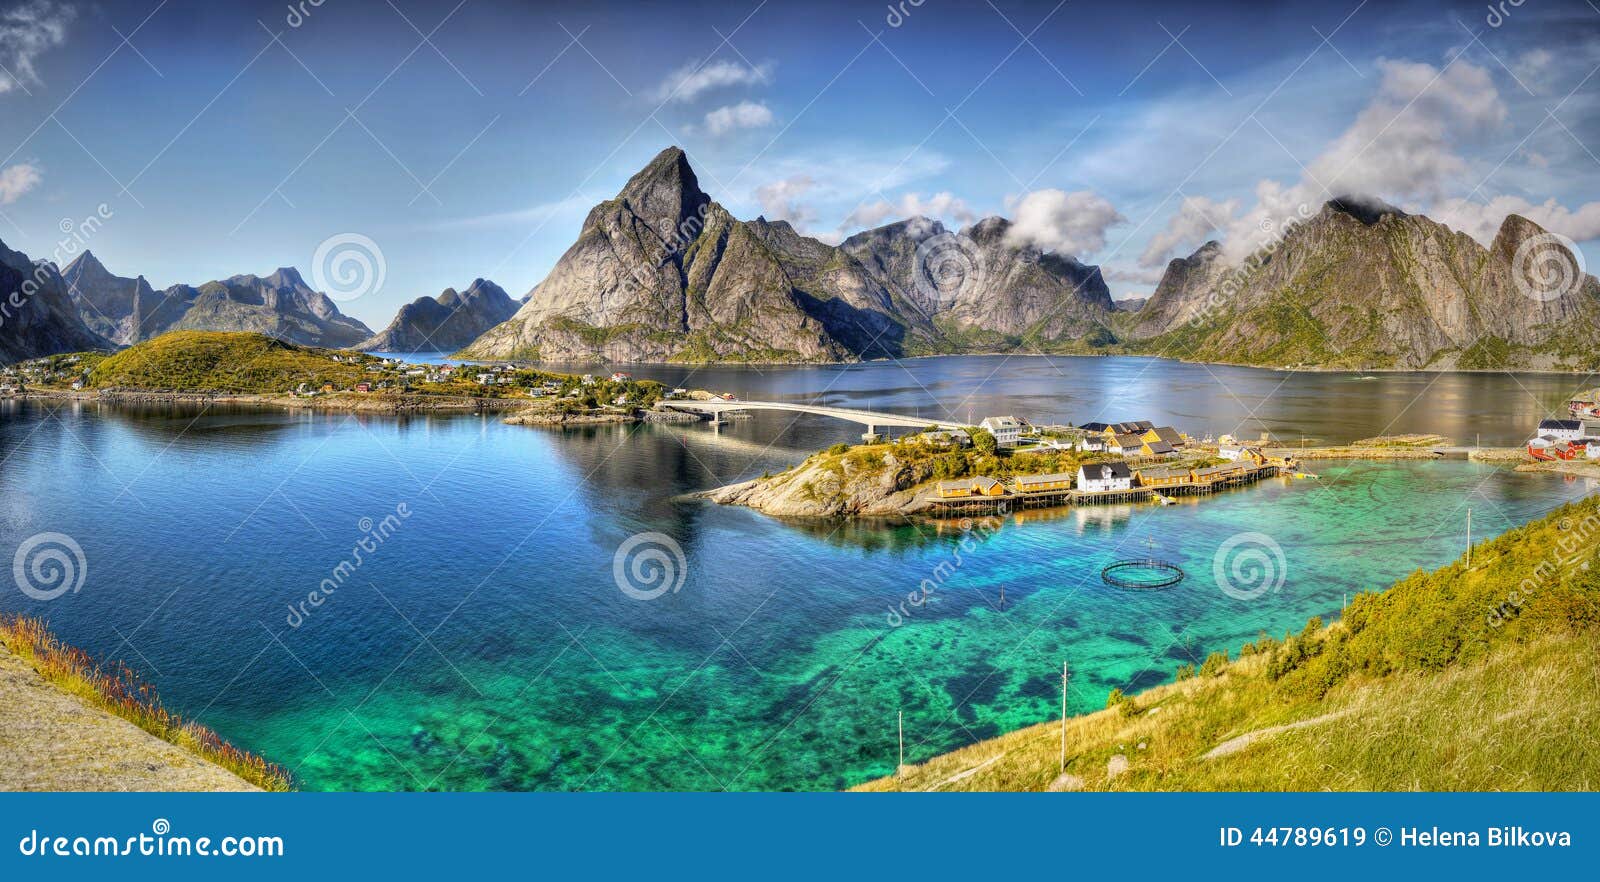 lofoten islands norway